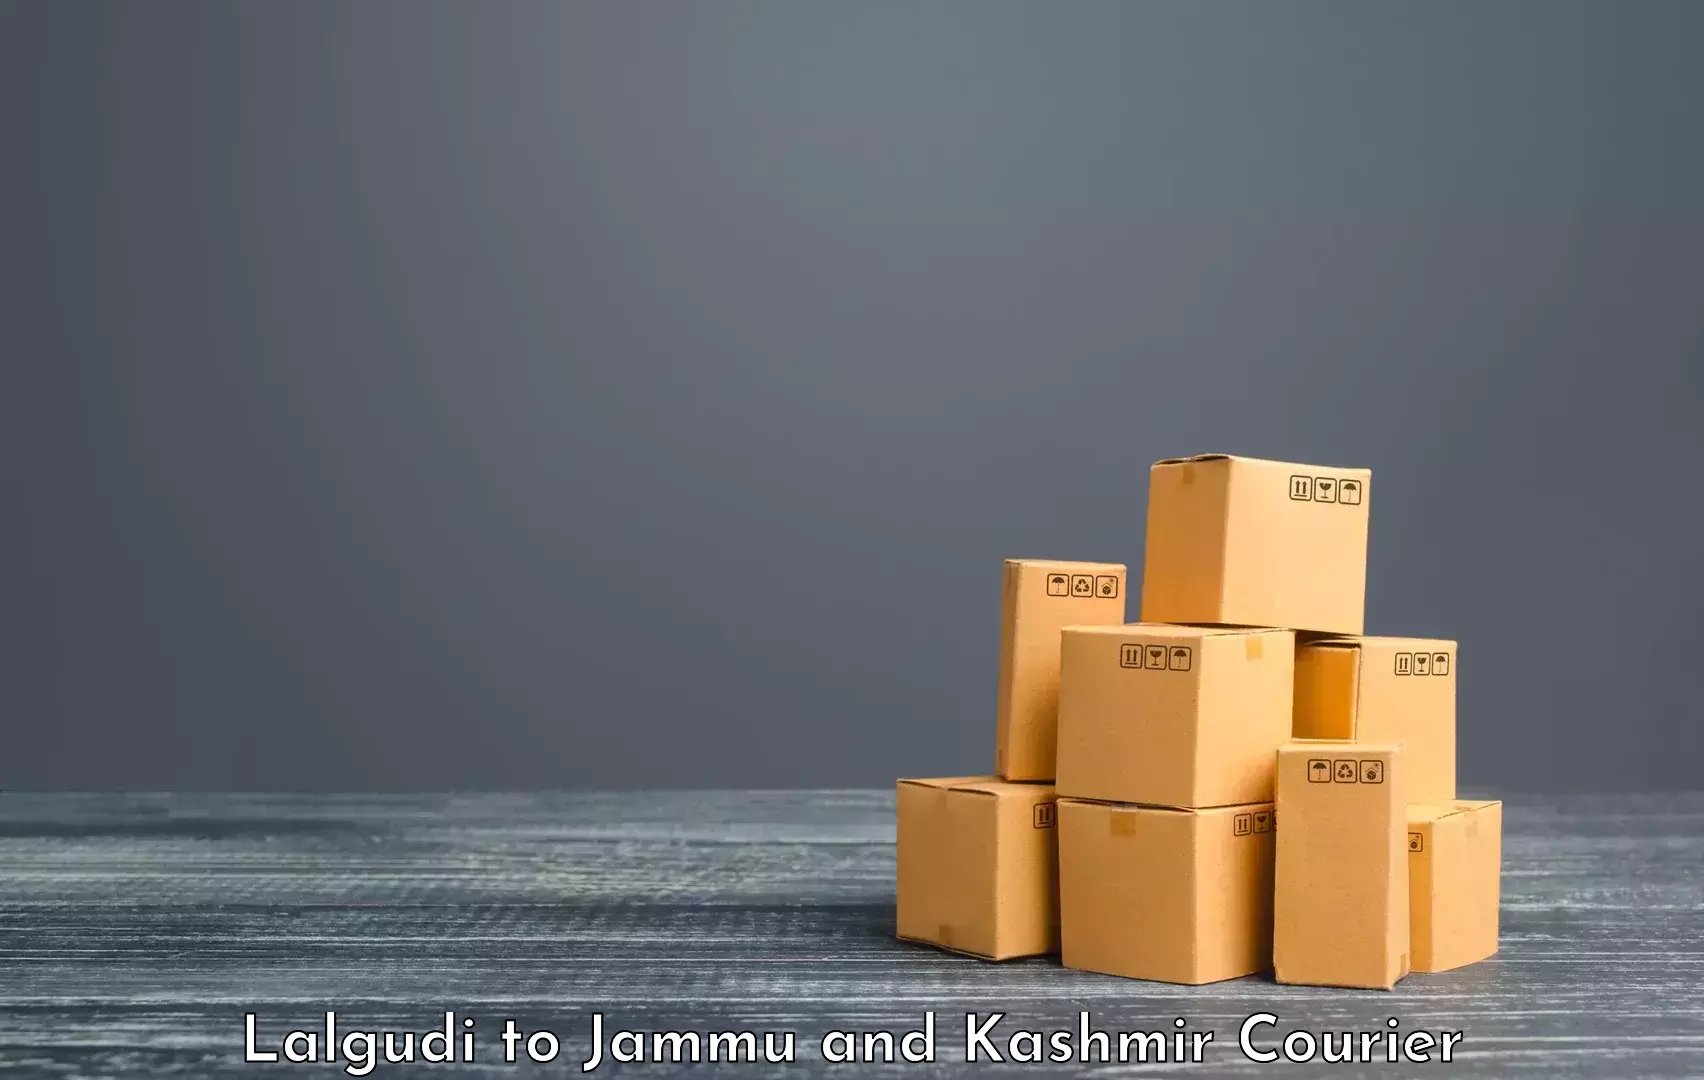 Luggage delivery calculator Lalgudi to Srinagar Kashmir